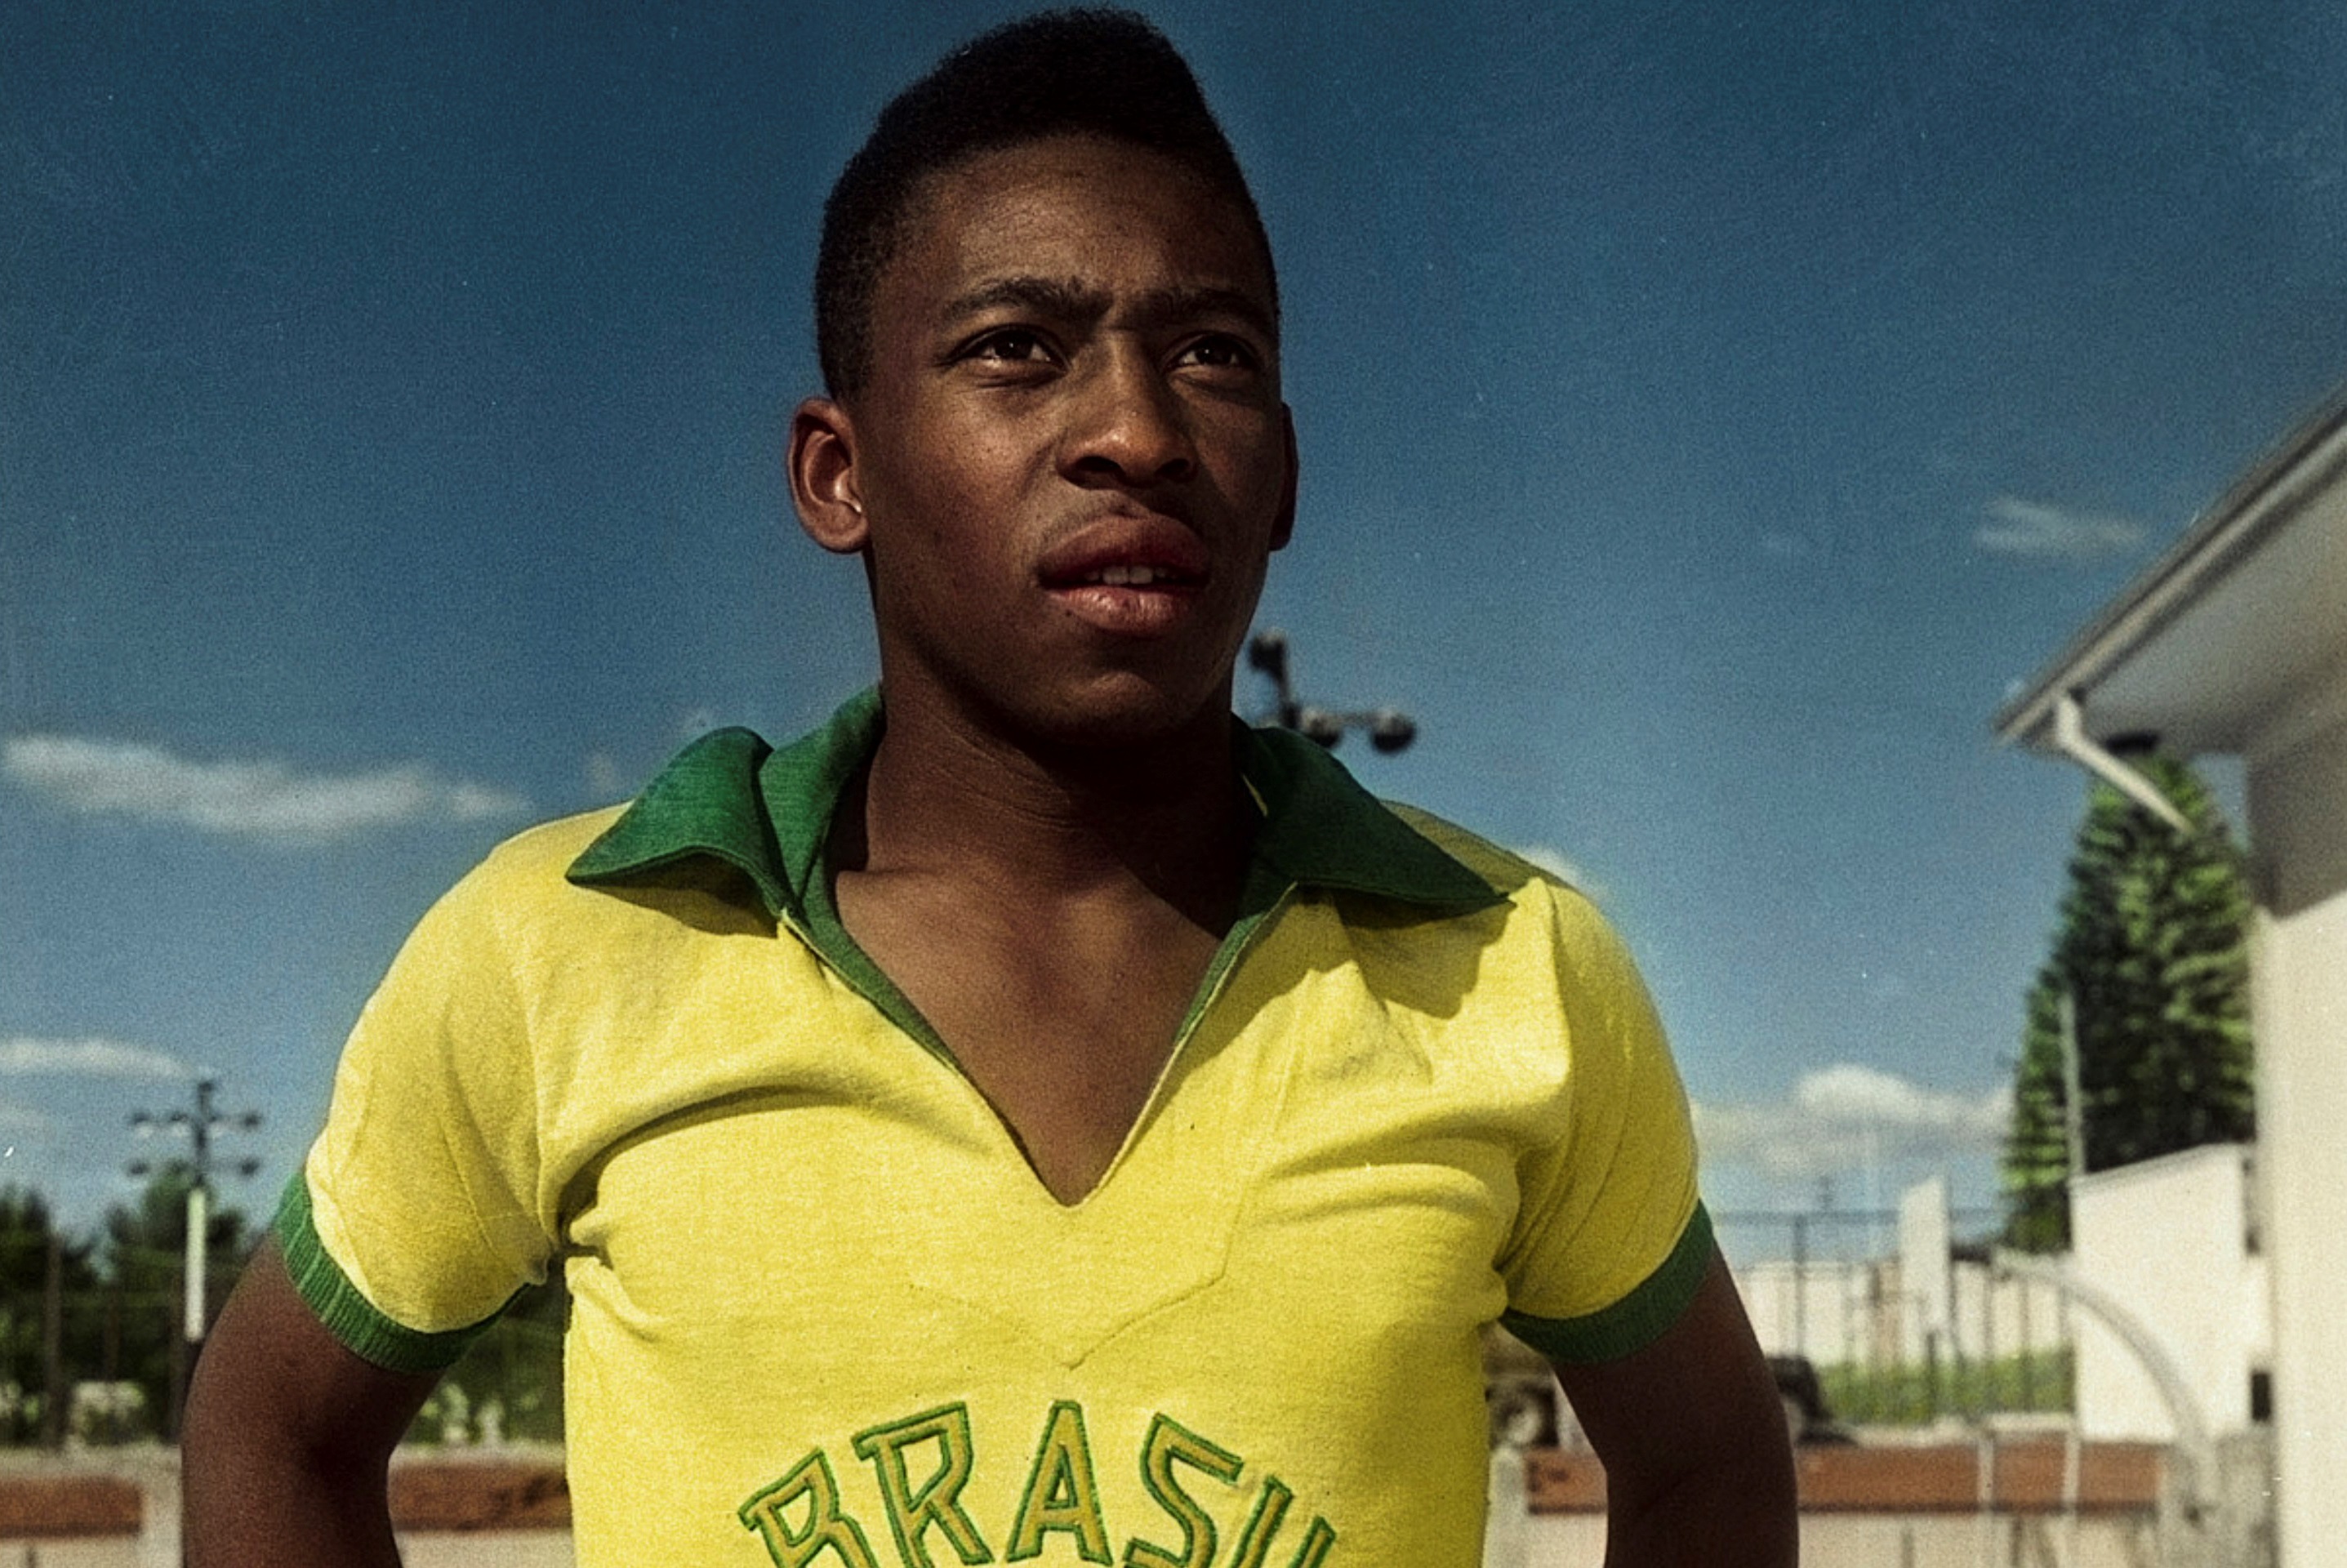 El documental "Pelé" se estrenó en febrero de 2021 e incluyó una entrevista exclusiva con el ex futbolista. (EFE)